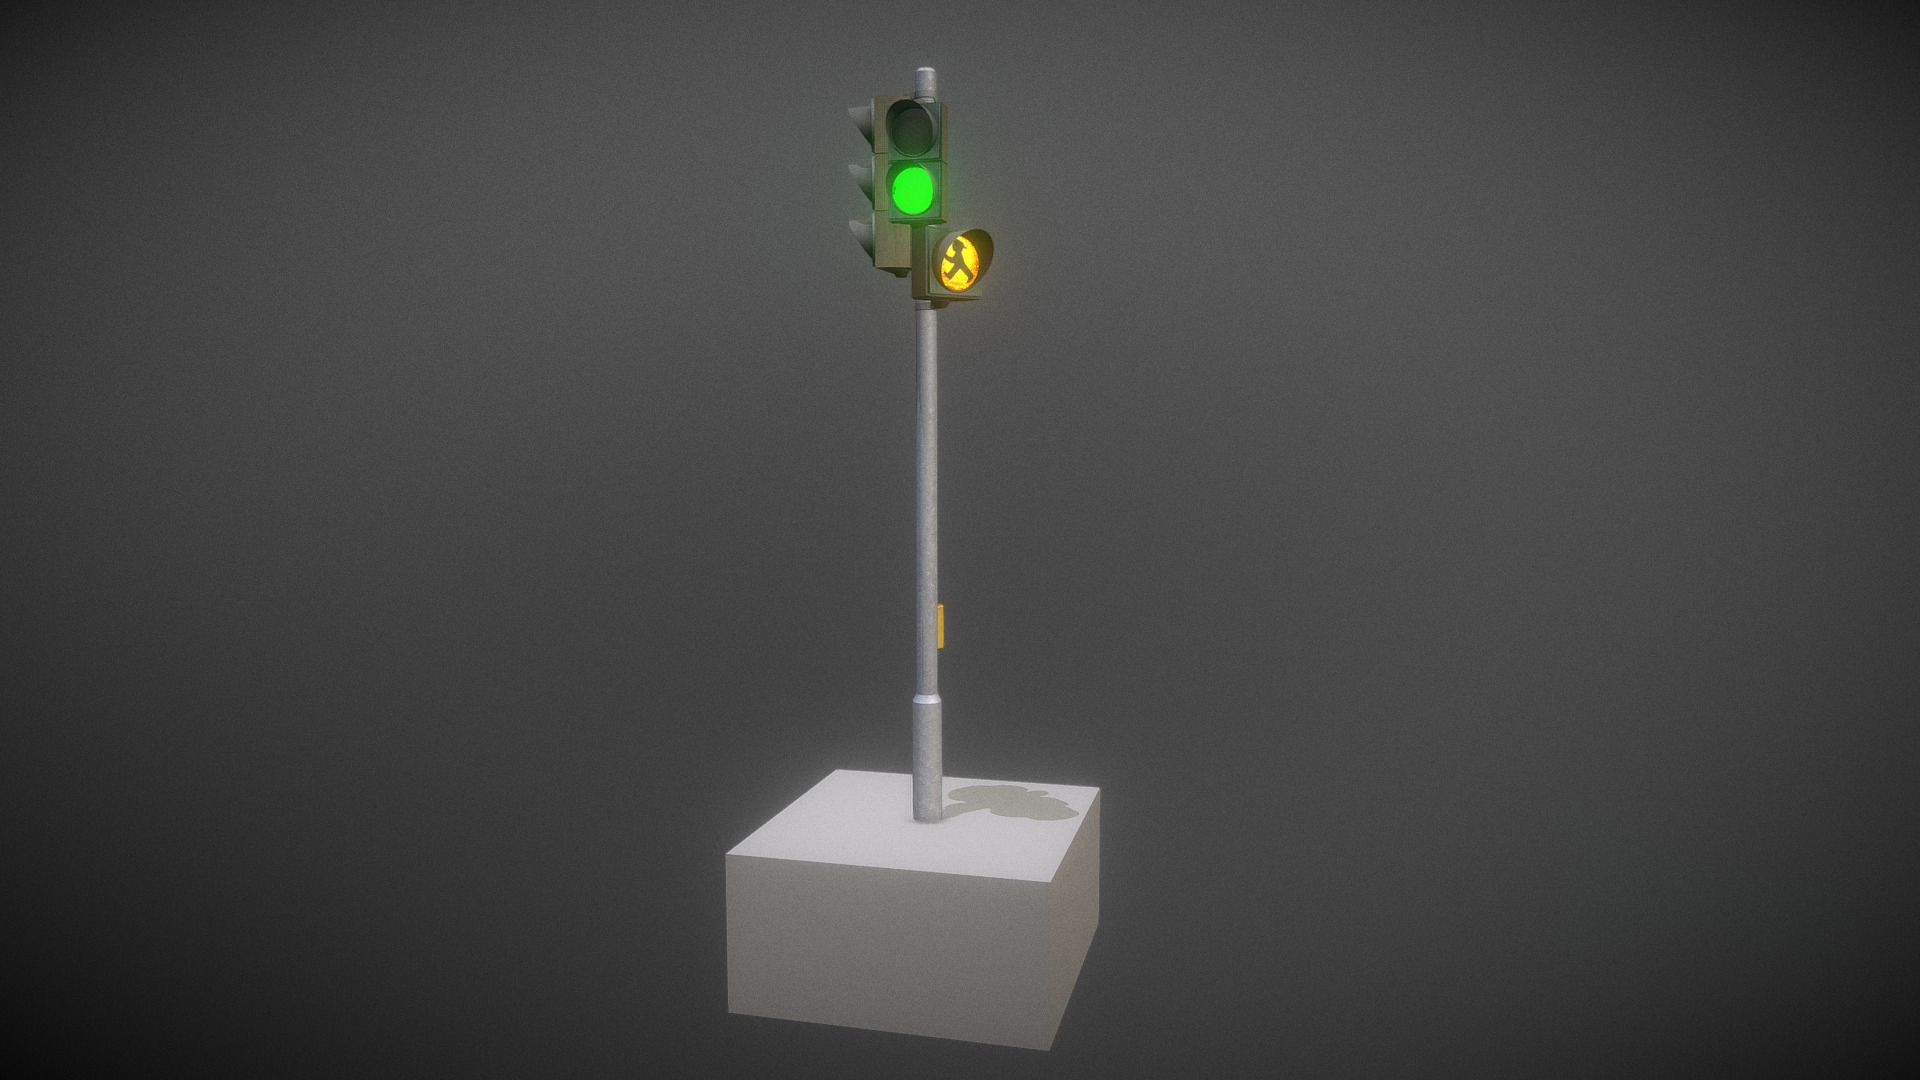 3D model Ampel mit gelbem Warnlicht für Fußgänger - This is a 3D model of the Ampel mit gelbem Warnlicht für Fußgänger. The 3D model is about a green light on a white stand.